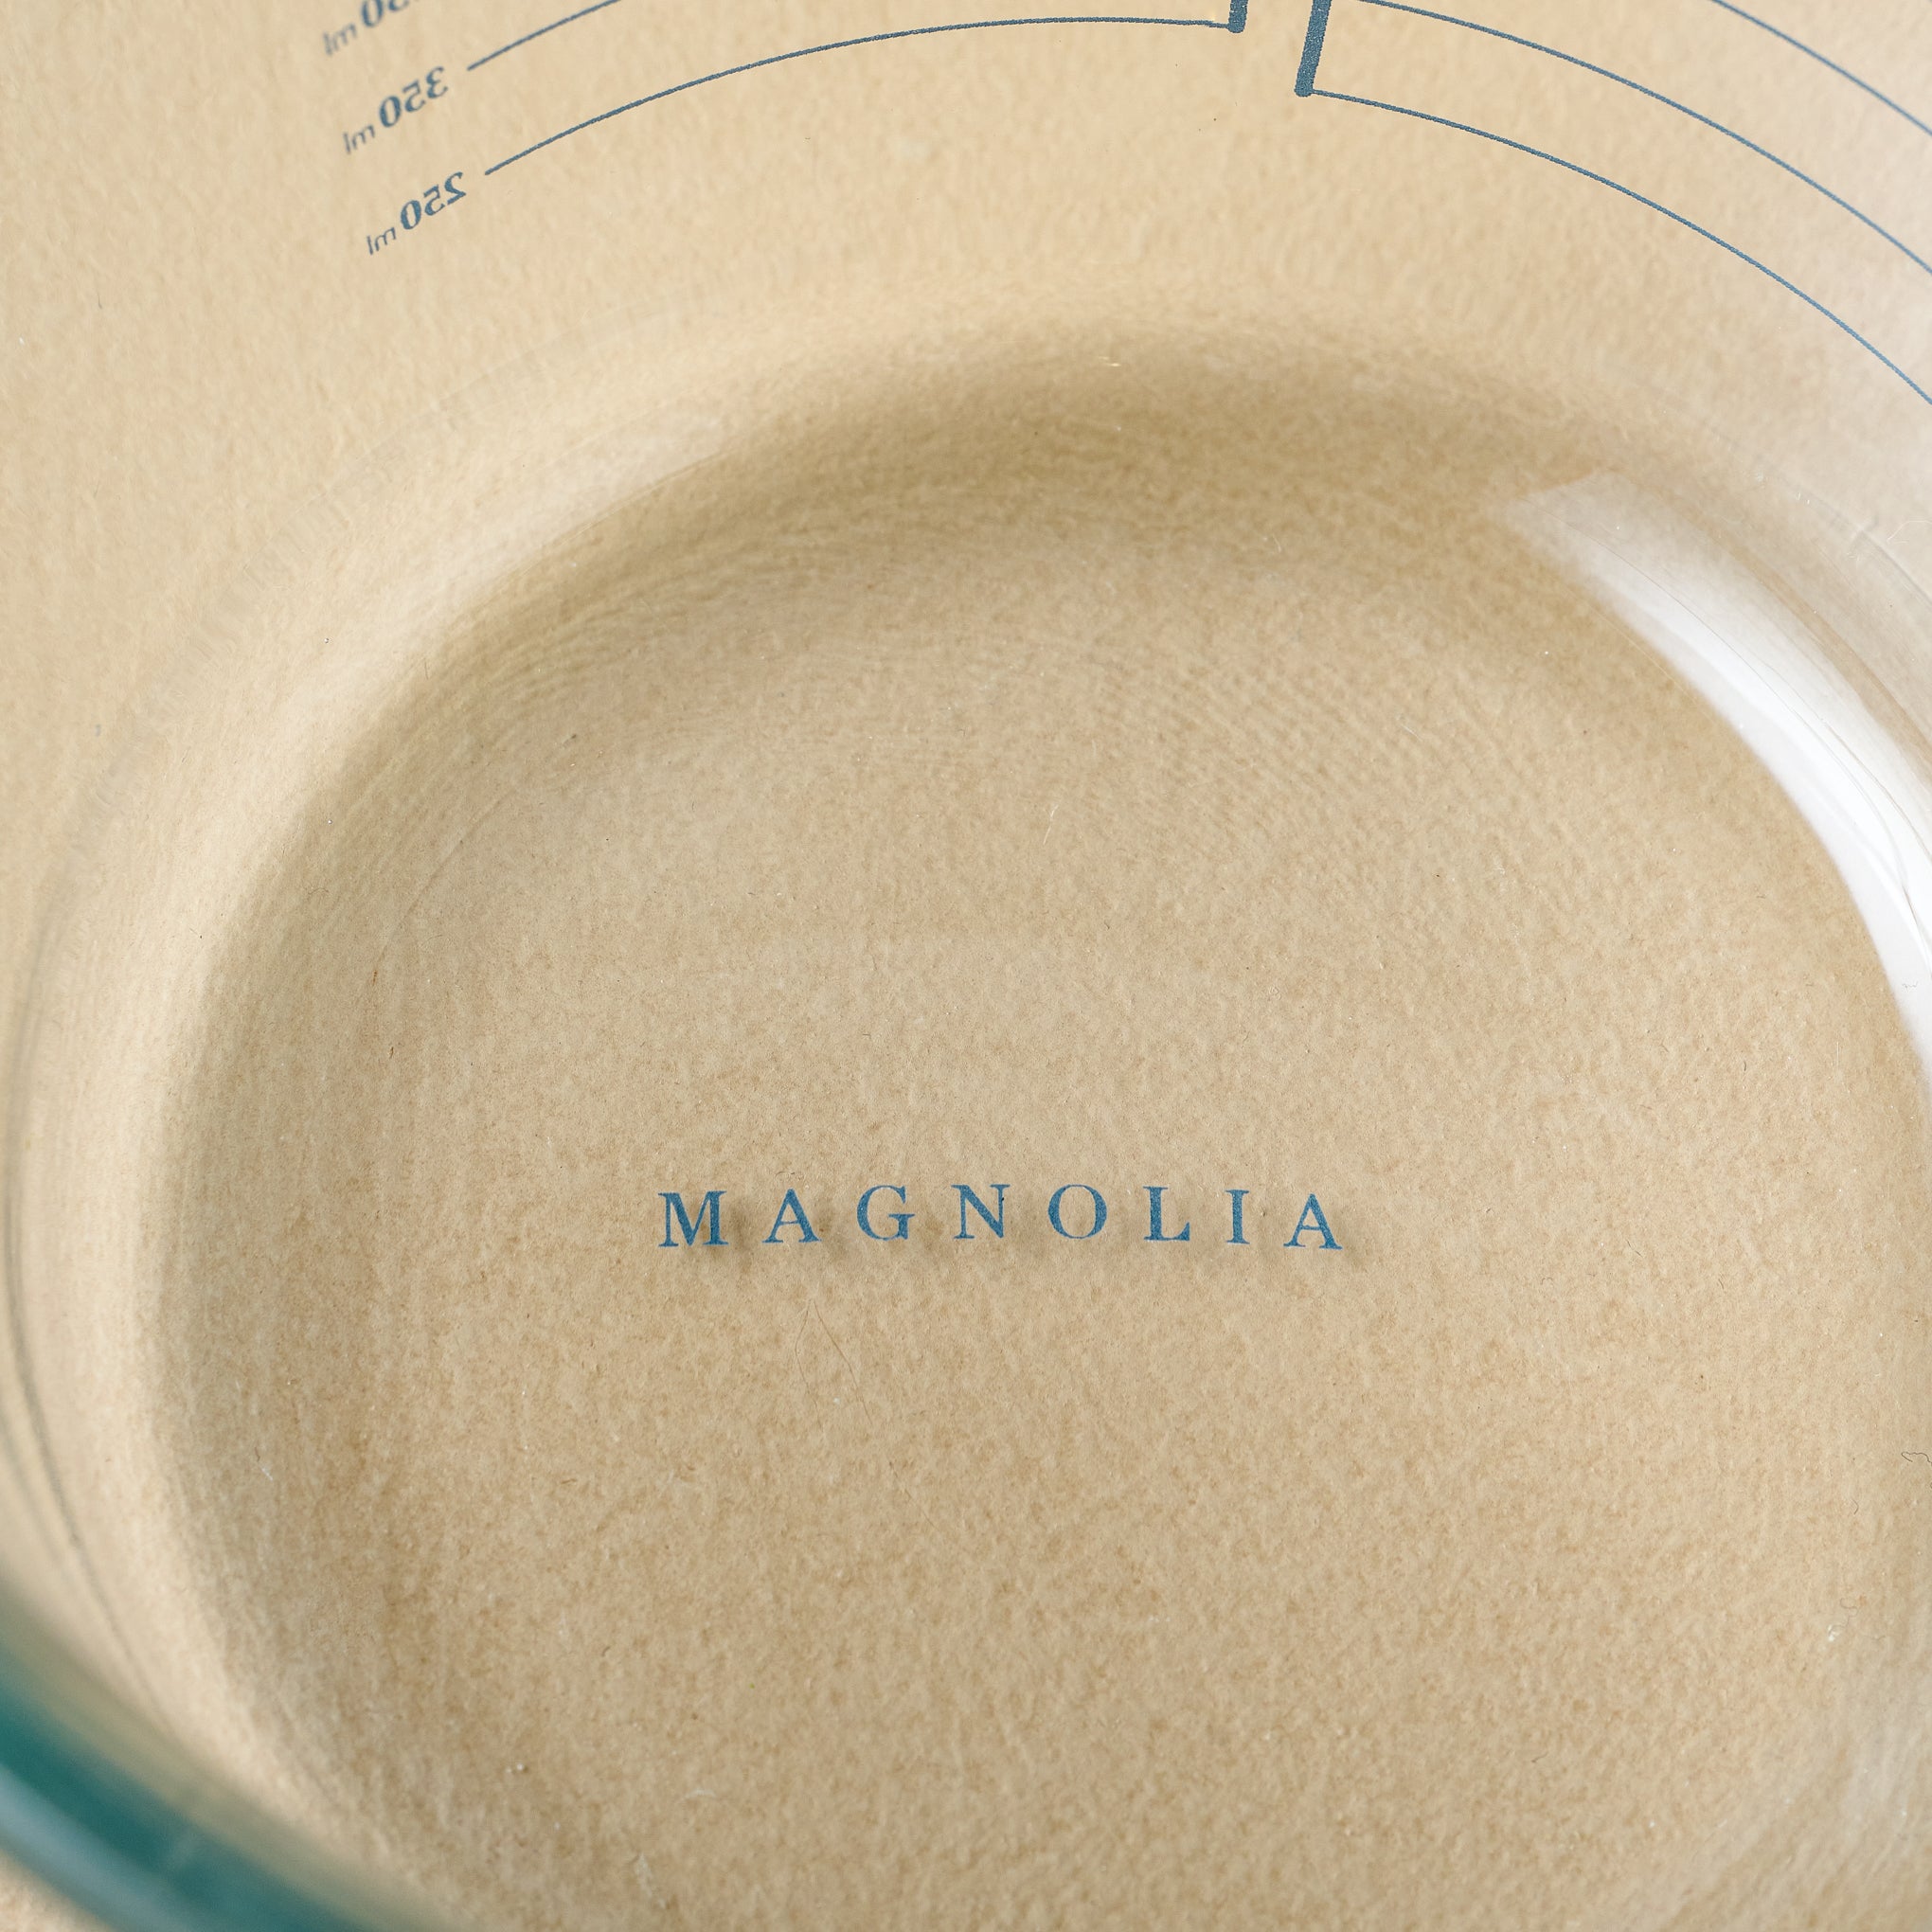 Magnolia Black Rim Ceramic Measuring Cups - Magnolia